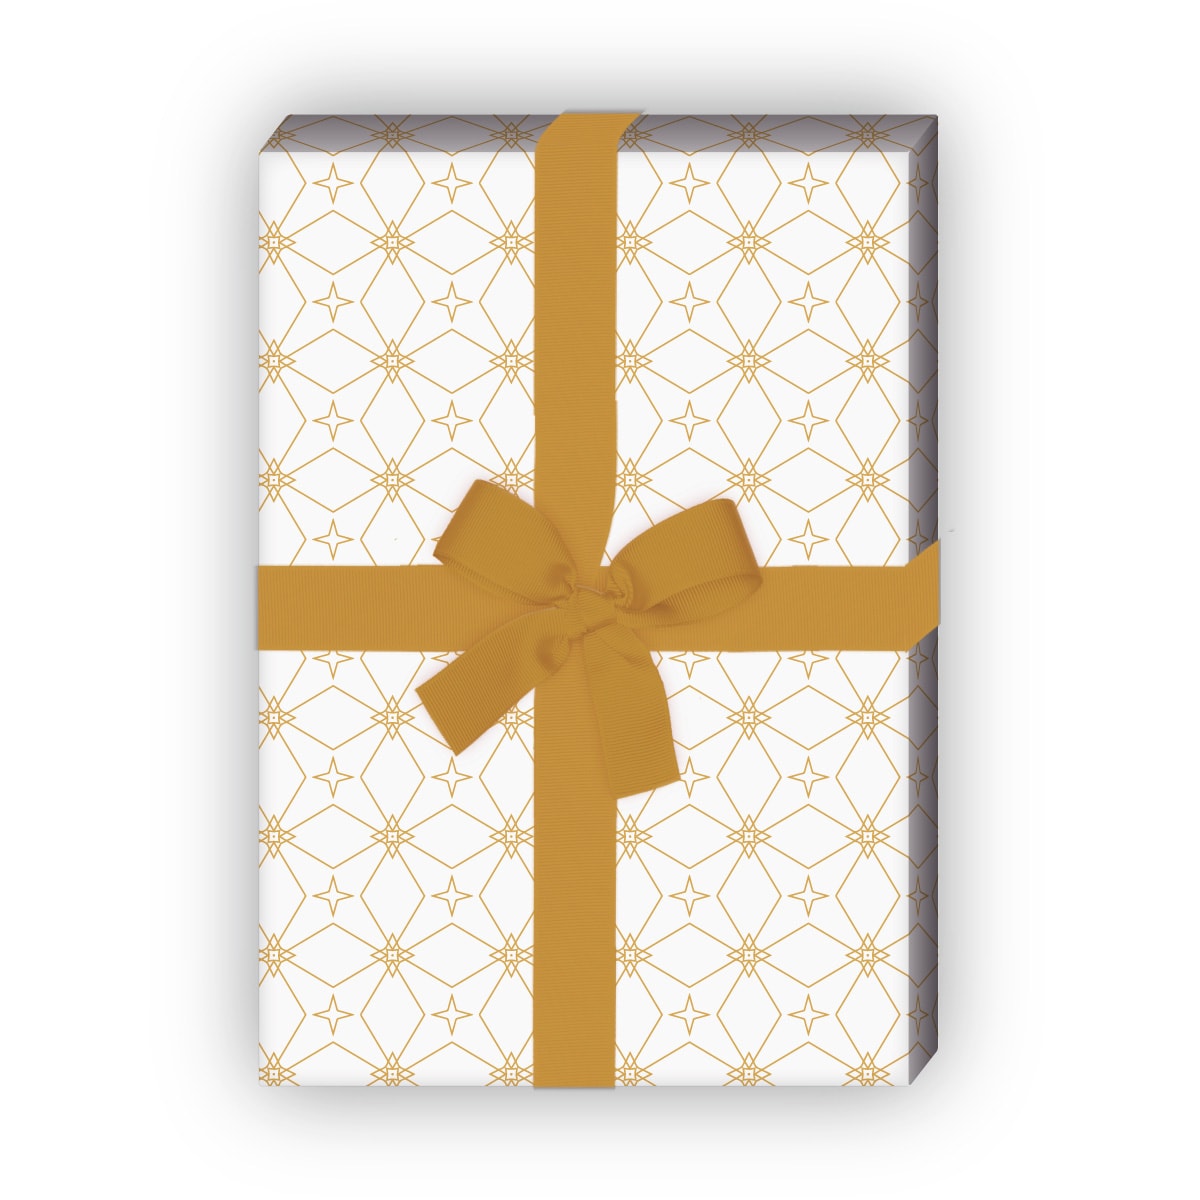 Kartenkaufrausch: Edles Sternen Mosaik Geschenkpapier aus unserer Weihnachts Papeterie in weiß